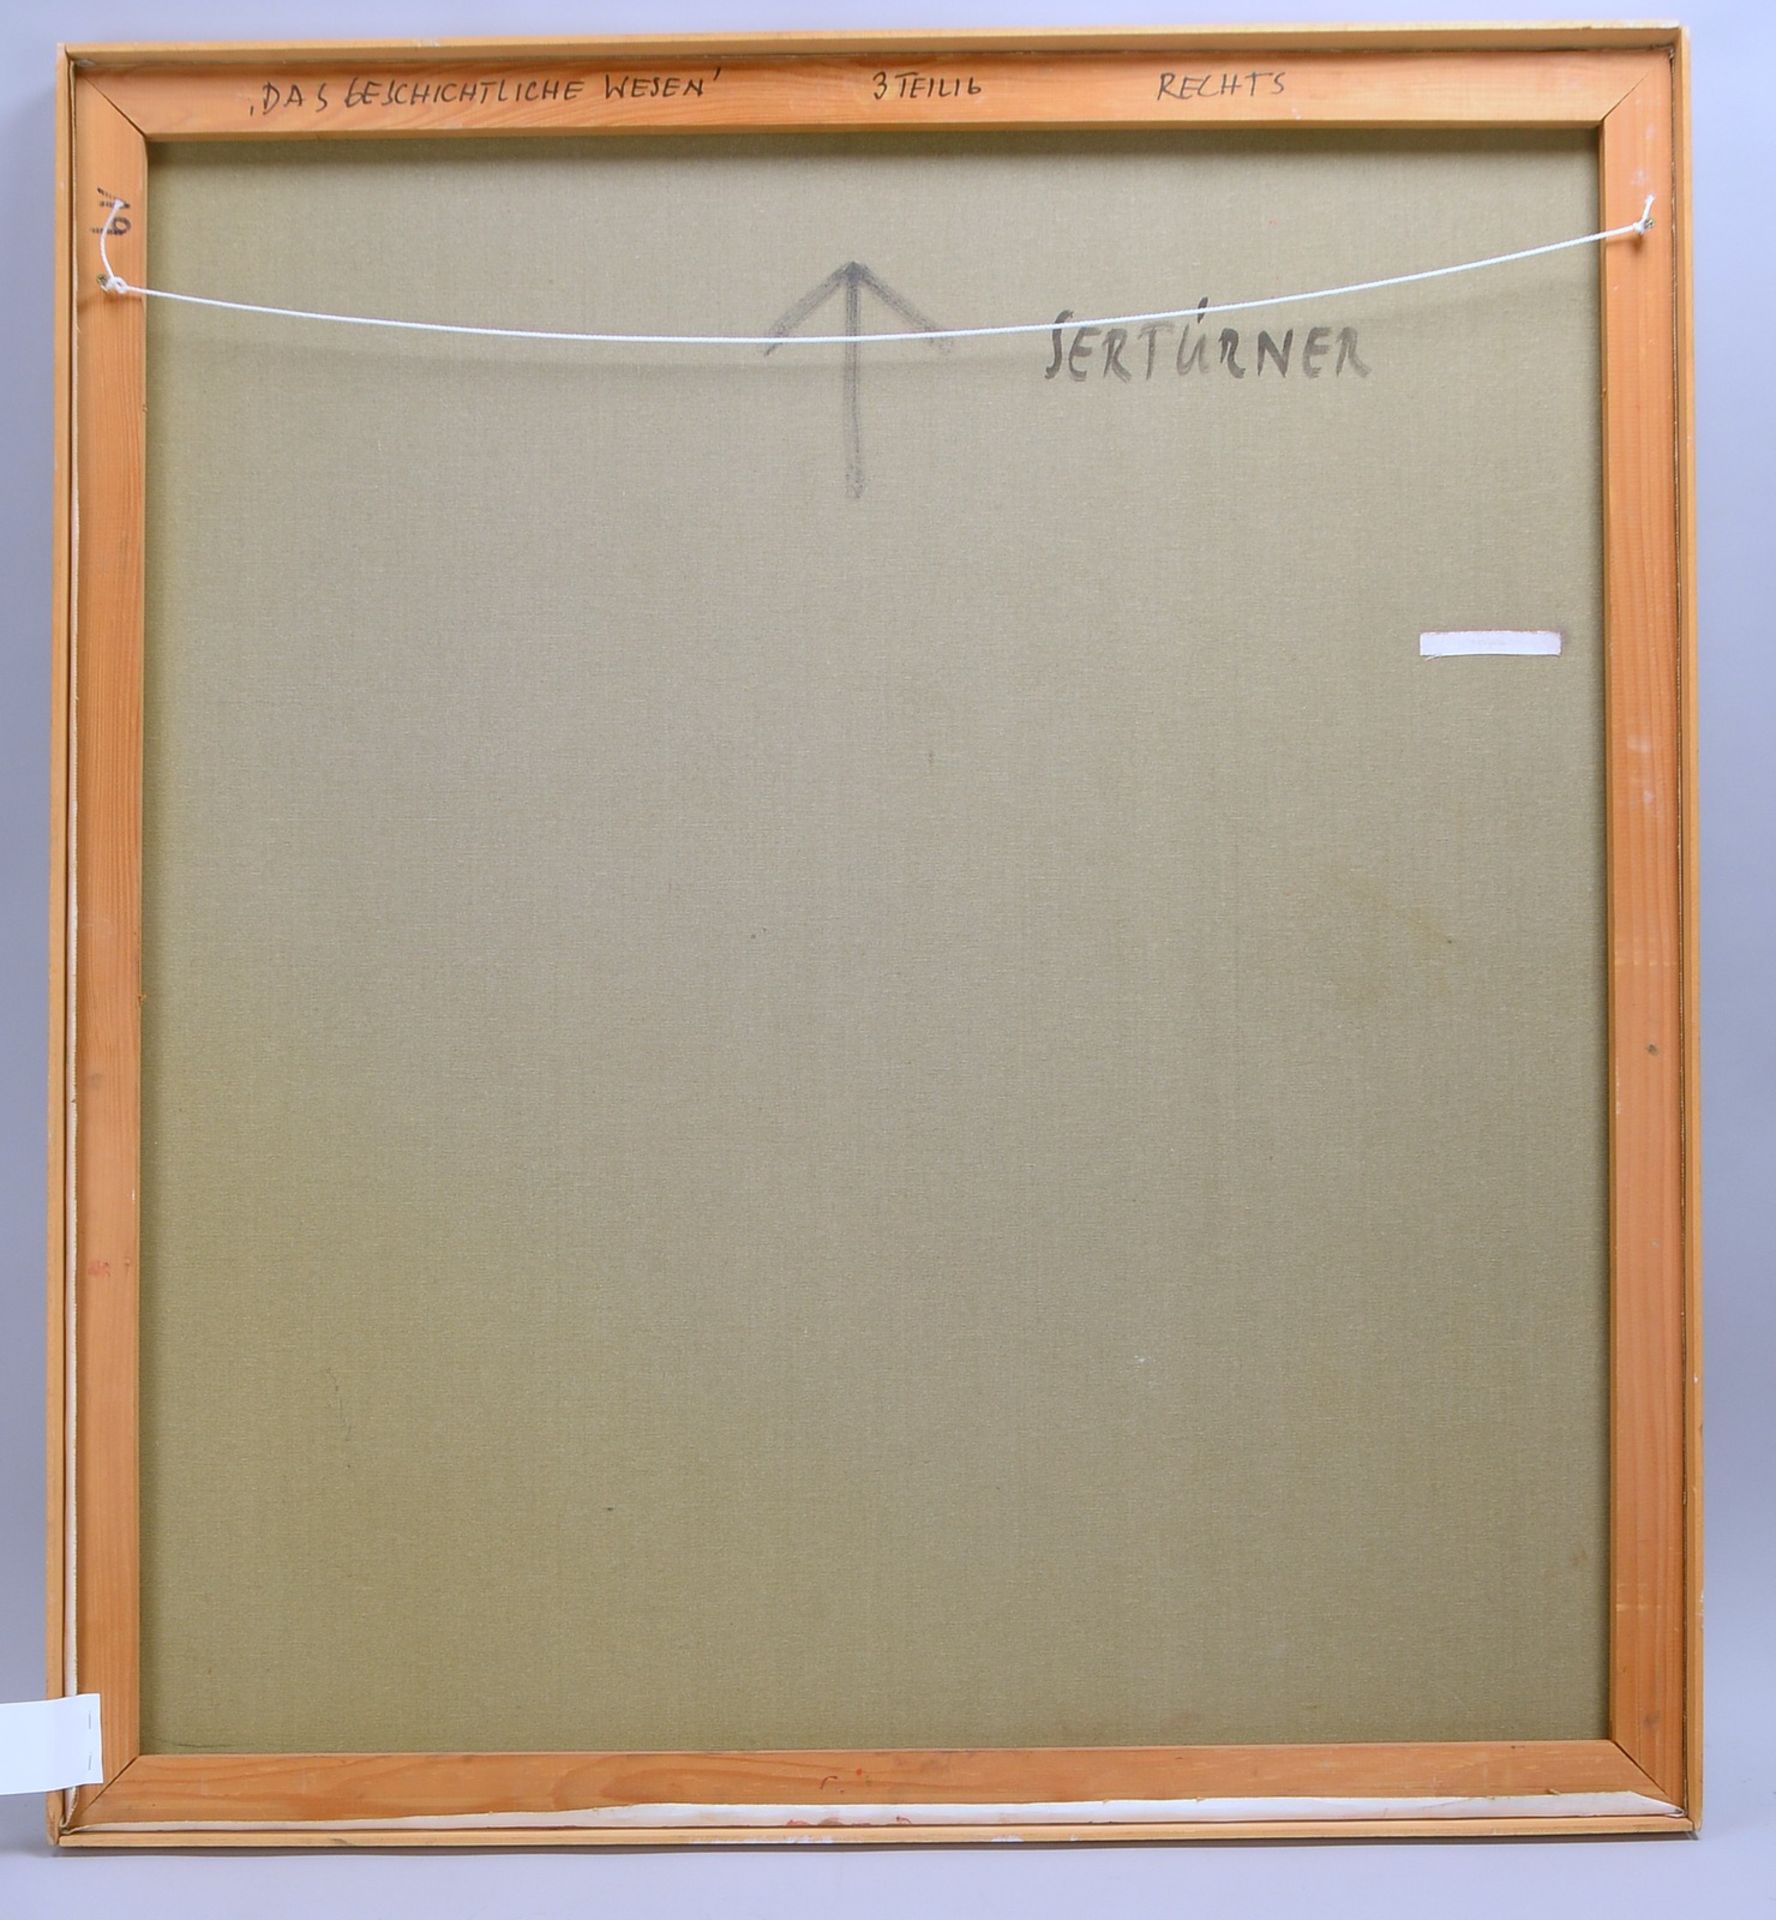 Sertürner, Wernhera, 'Das Geschichtliche Wesen' - OT, Öl/Lw, sign.; Rahmenmaße 110 x 100 cm - Image 3 of 3